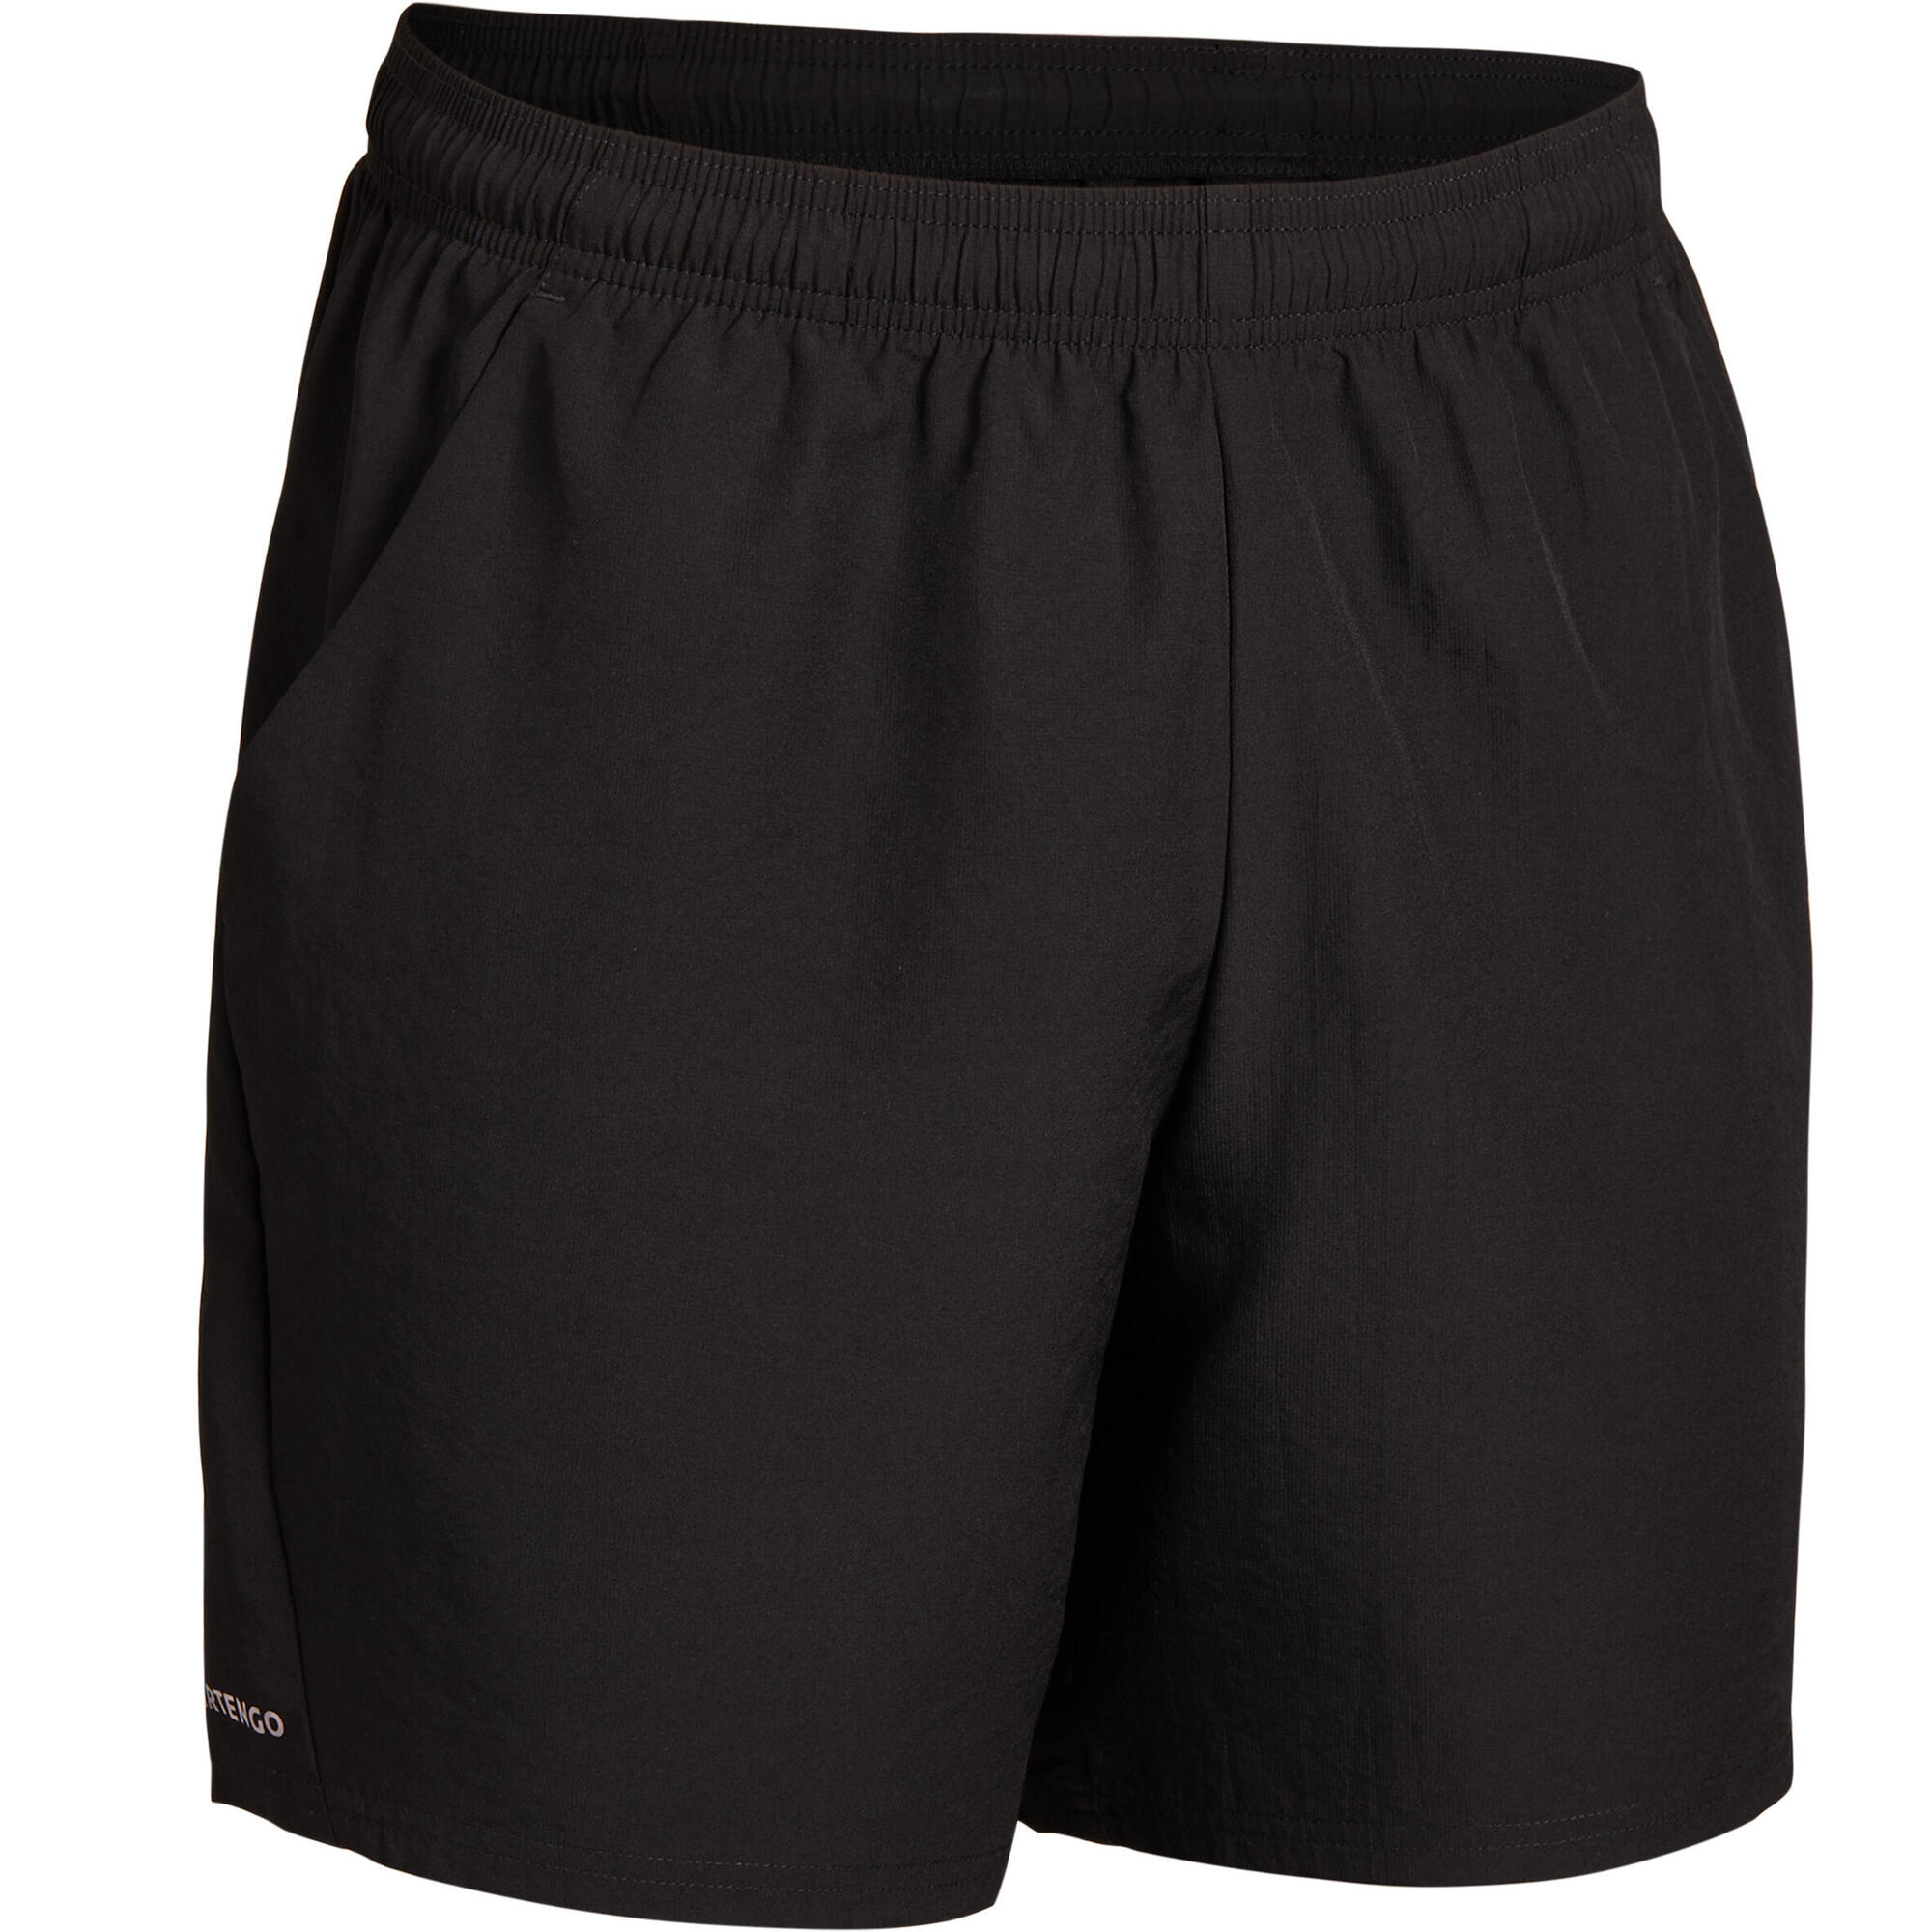 artengo tennis shorts